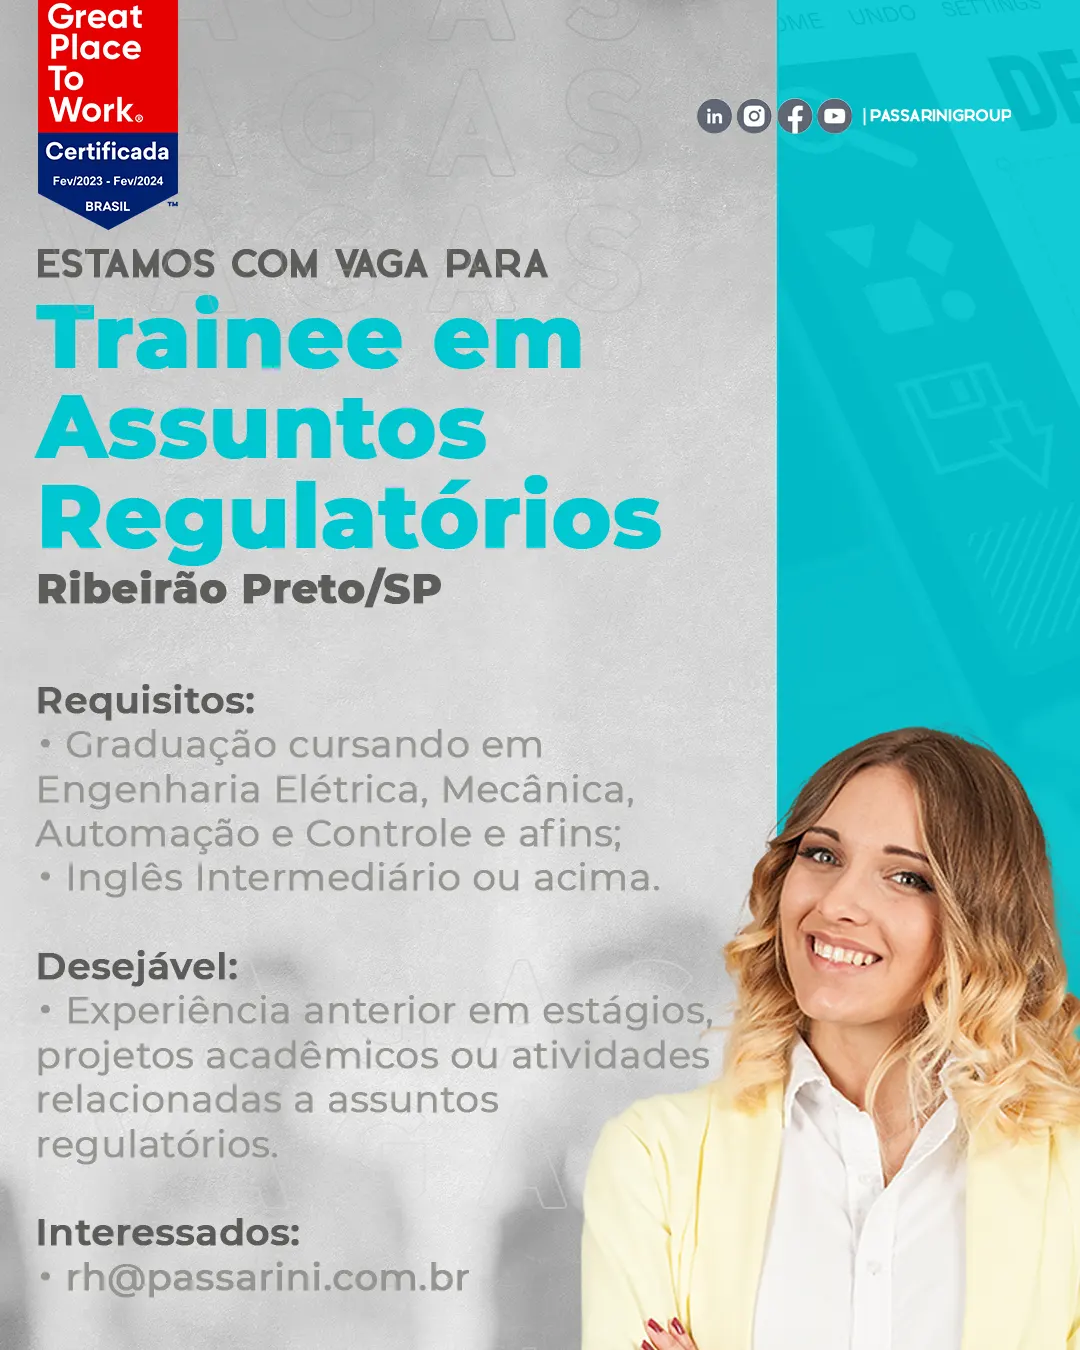 Trainee em Assuntos Regulatórios Ribeirão Preto/SP